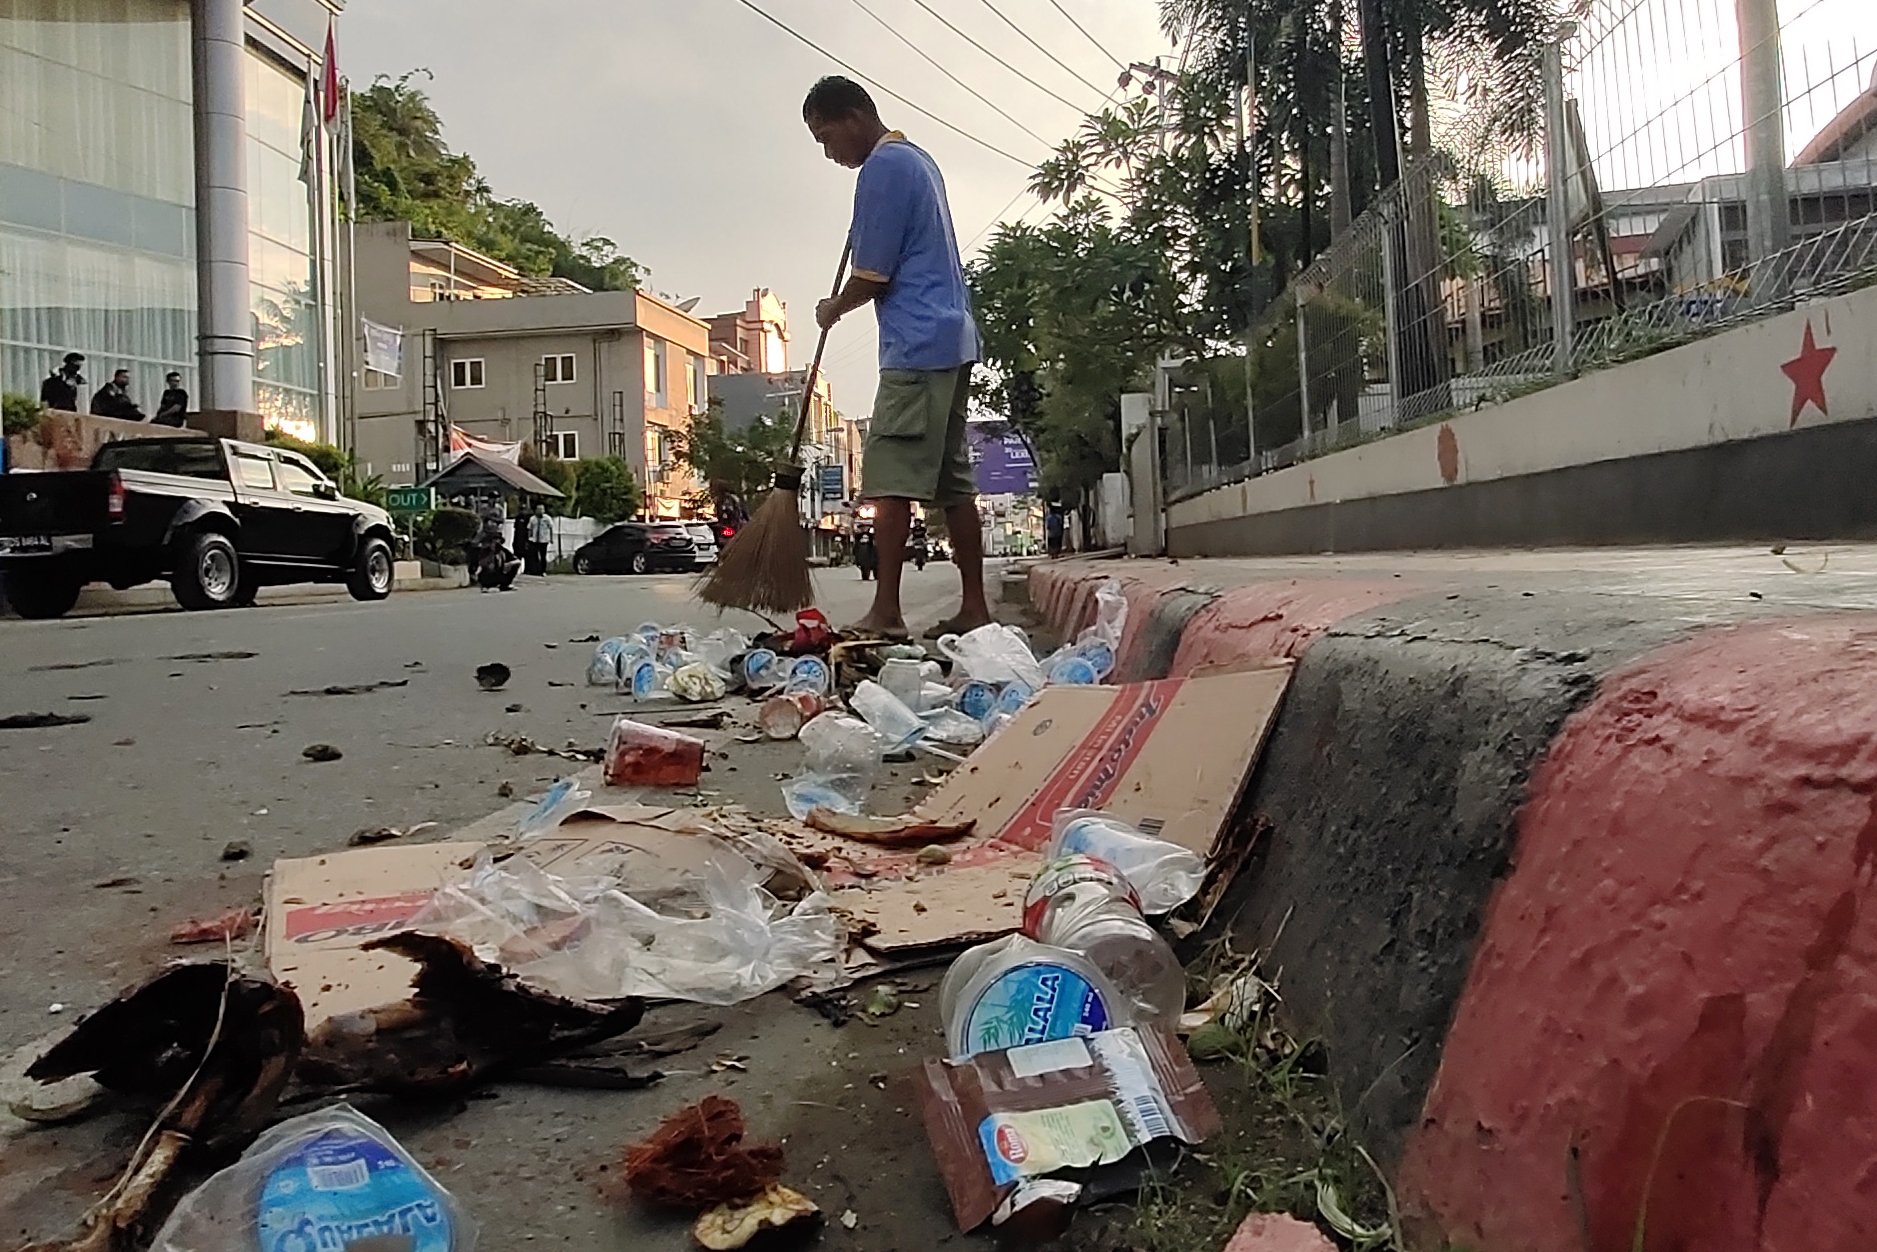 Seorang warga membersihkan sampah seusai berlangsungnya aksi unjuk rasa di Jayapura, Papua, Jumat (30/8/2019). Sejumlah bangunan dan kendaraan terbakar saat aksi pada (29/8/2019).